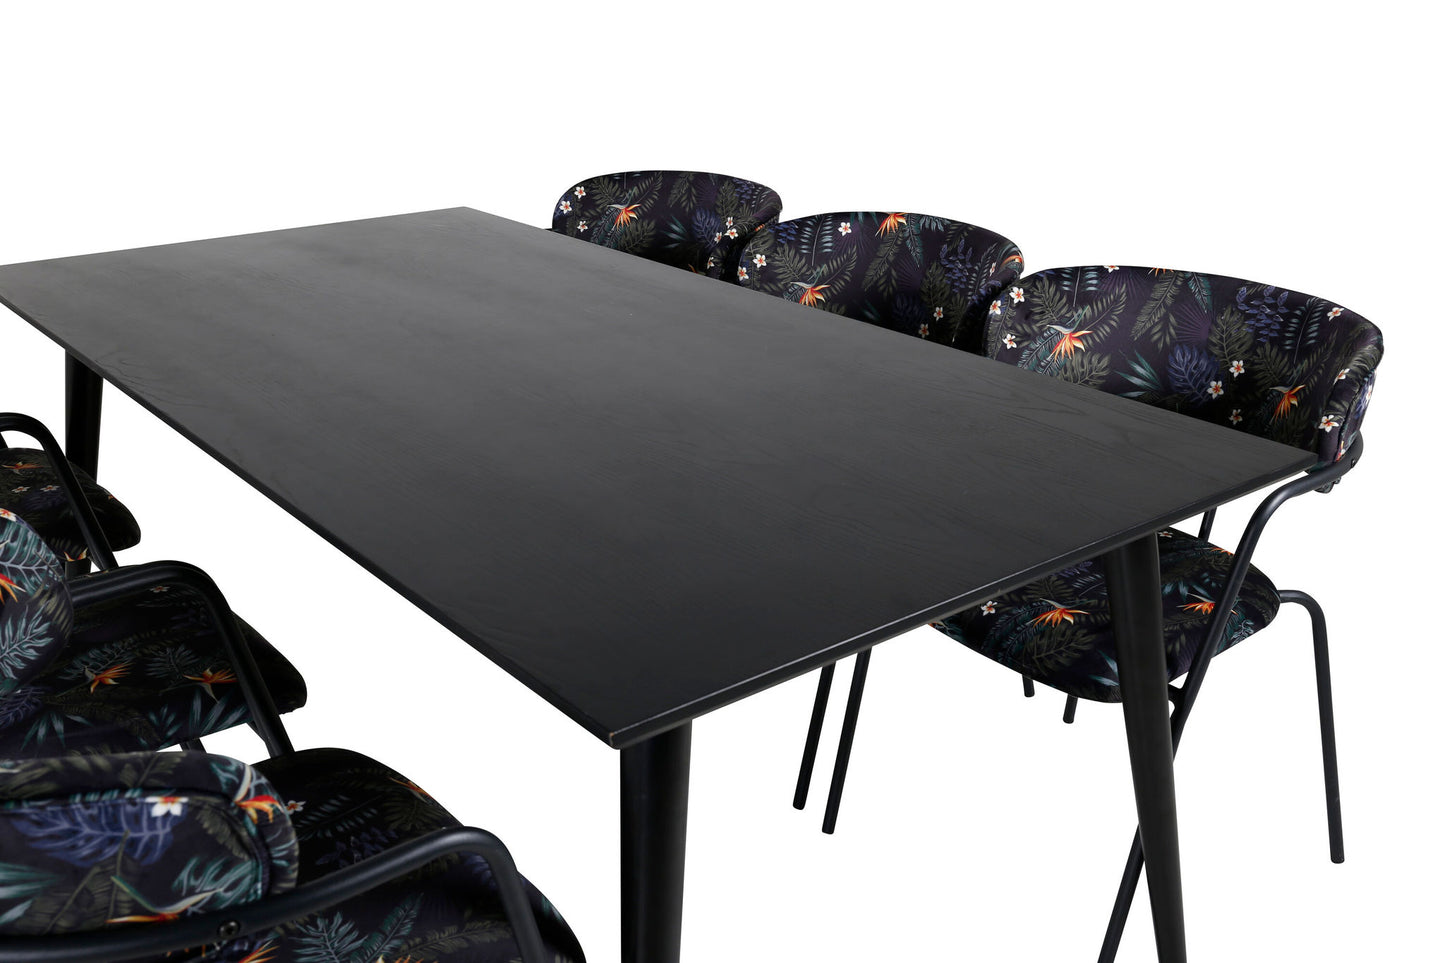 Dipp - Spisebord, 180*90cm - Sort finér / helt sorte ben - Arrow armstol - Sorte ben - Sort blomster print Stof